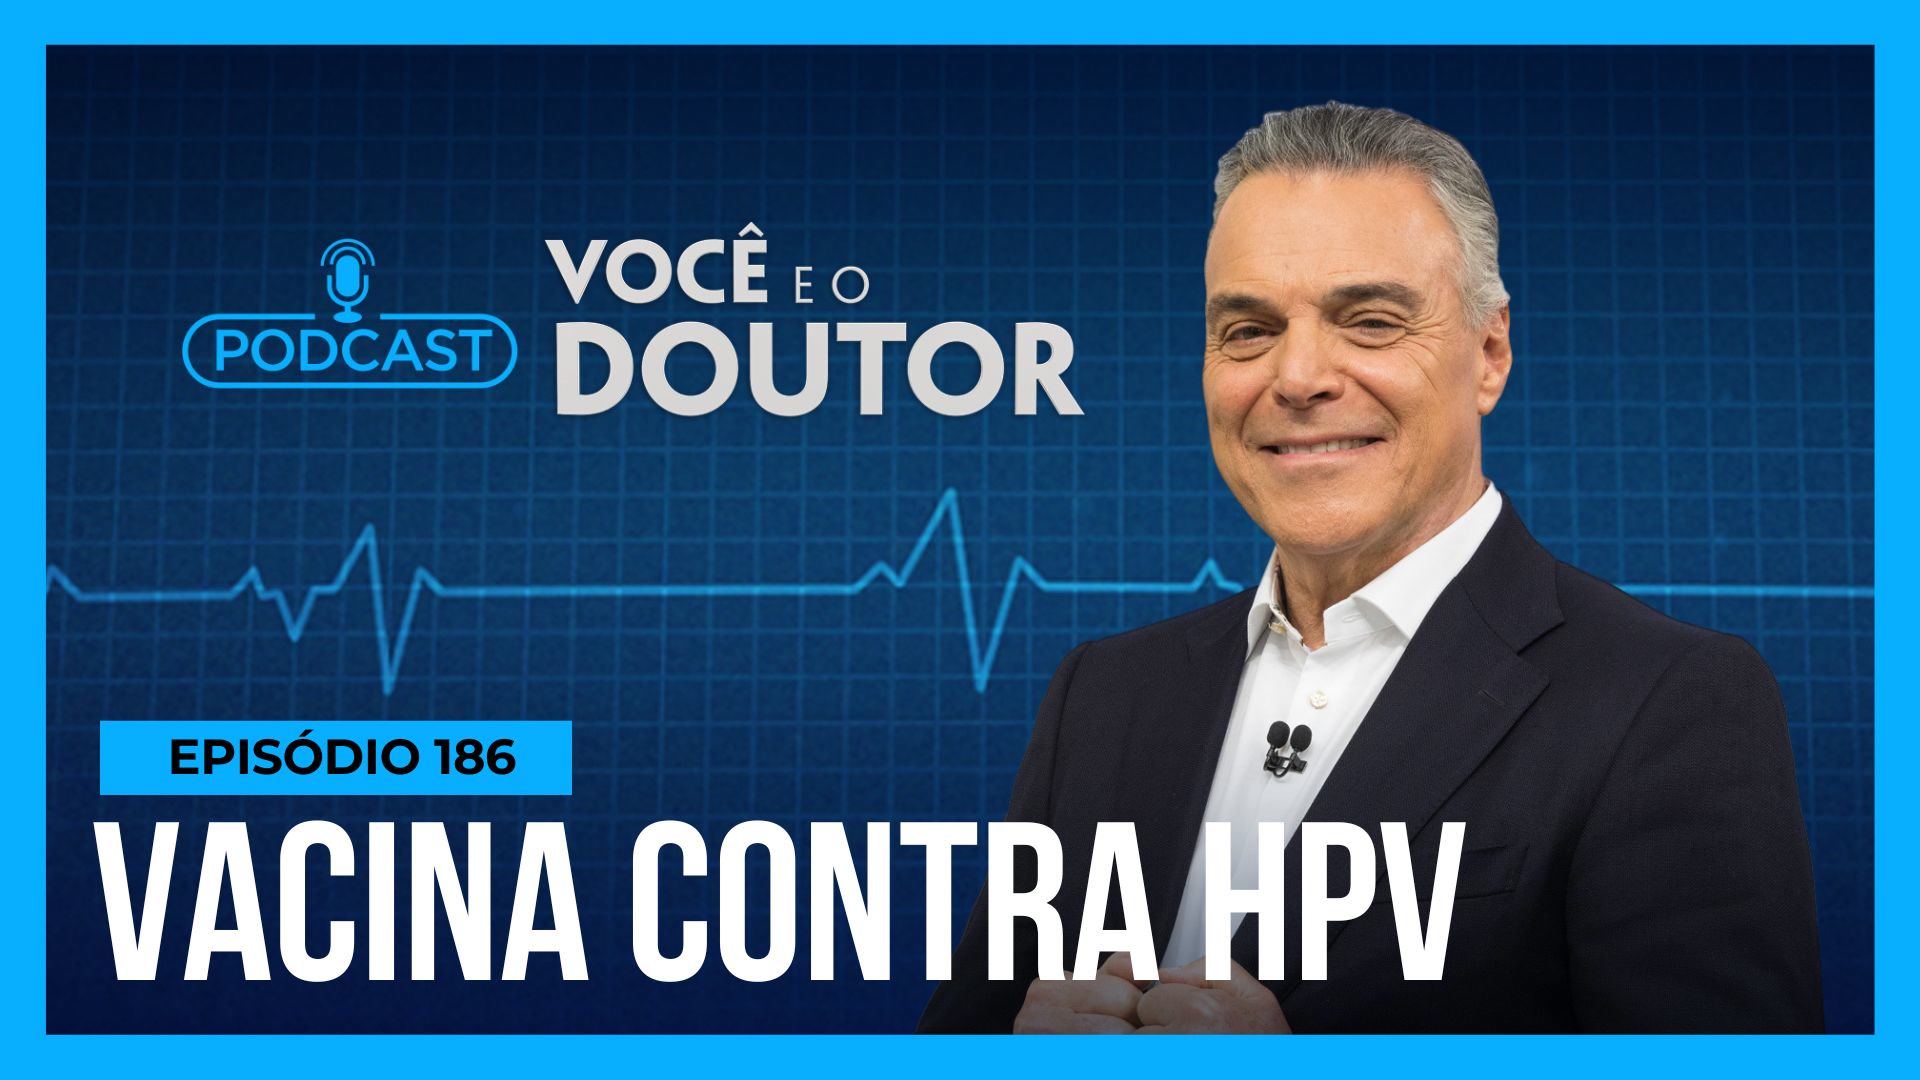 Vídeo: Podcast Você e o Doutor : Antonio Sproesser repercute nova vacina contra o HPV